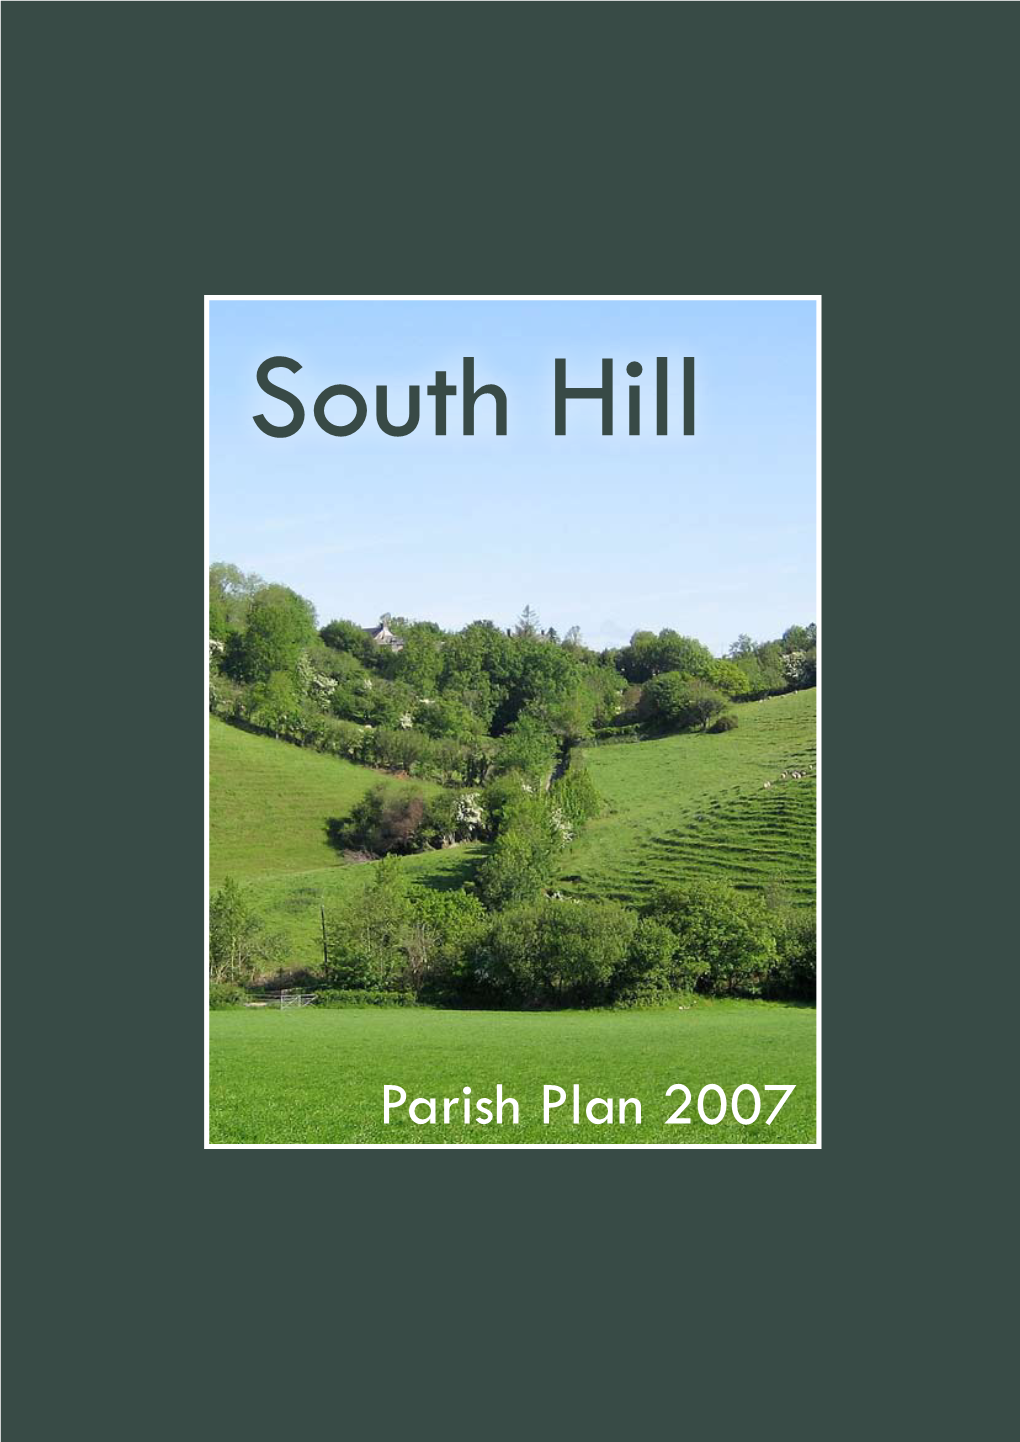 Parish Plan 2007